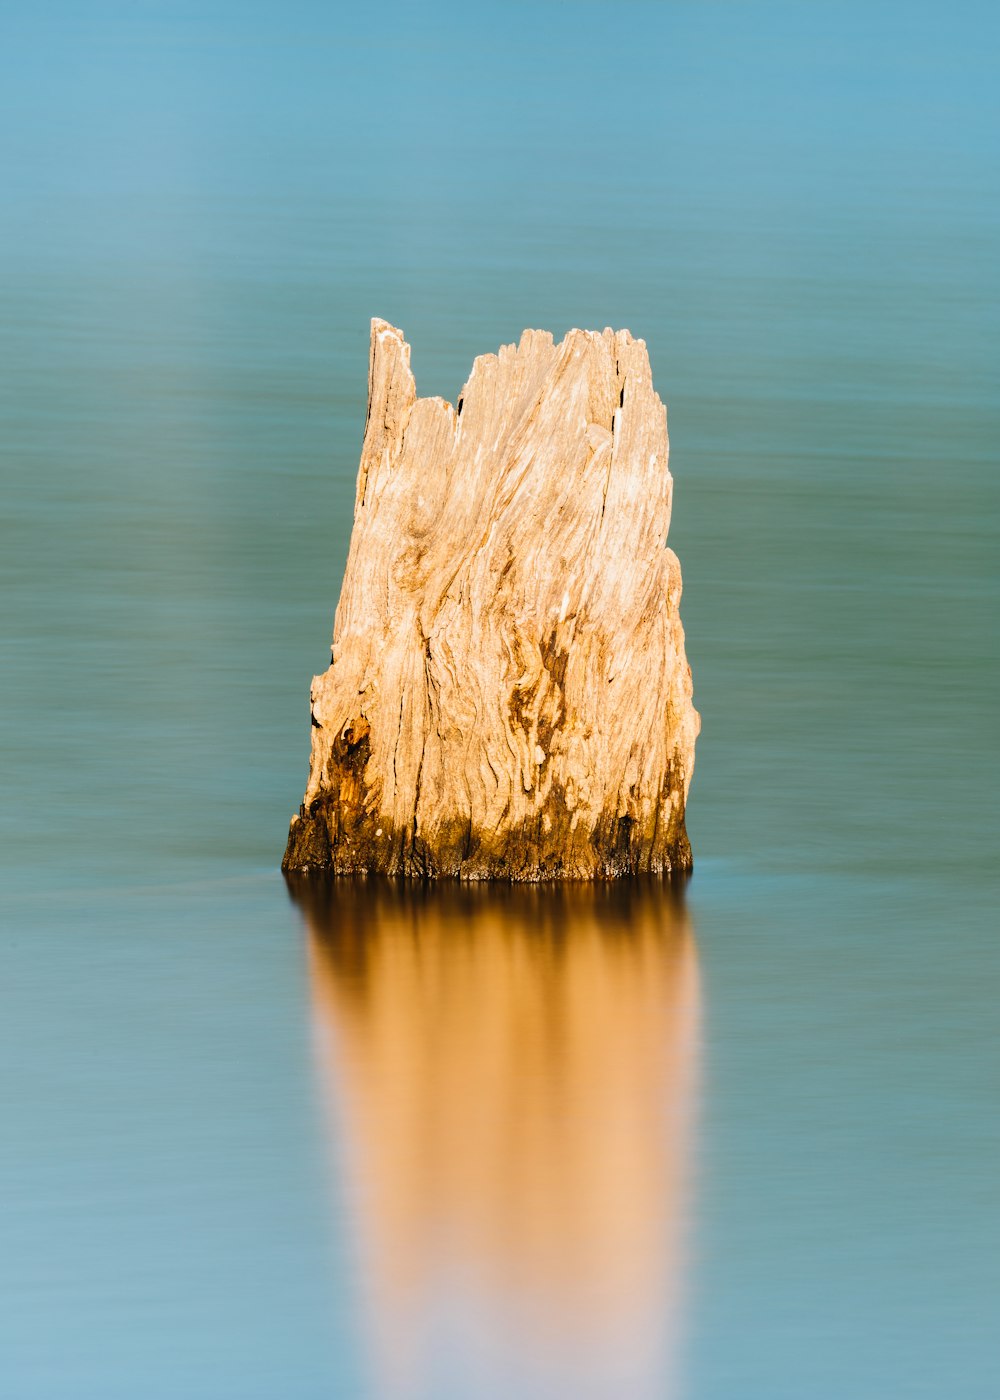 formazione rocciosa marrone sullo specchio d'acqua